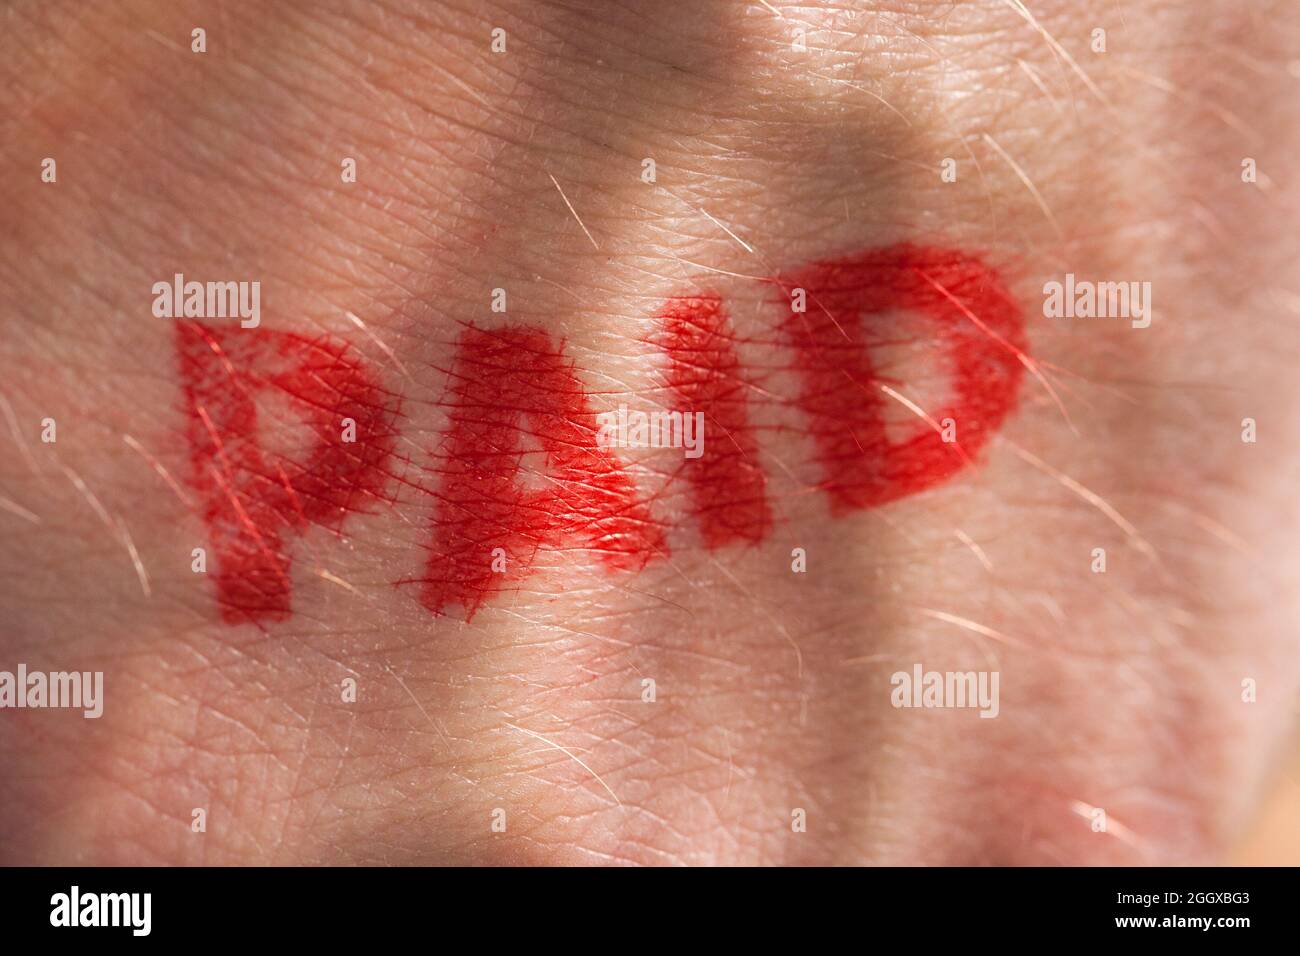 Roter Tintenstempel mit dem Wort, das auf dem Handrücken bezahlt wird Stockfoto